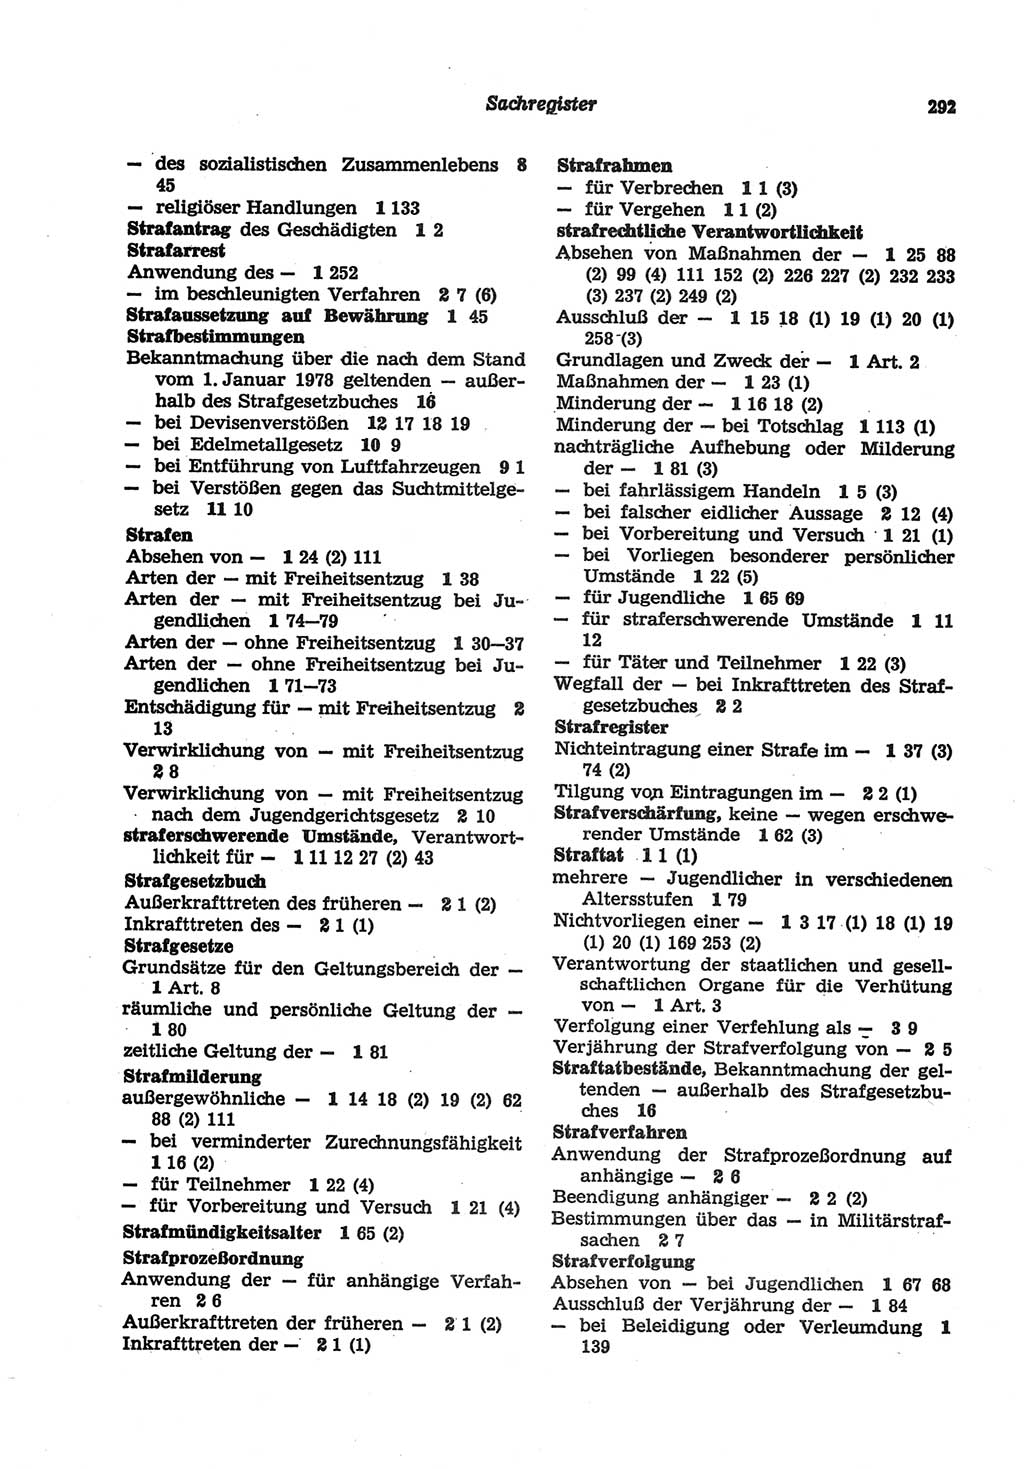 Strafgesetzbuch (StGB) der Deutschen Demokratischen Republik (DDR) und angrenzende Gesetze und Bestimmungen 1977, Seite 292 (StGB DDR Ges. Best. 1977, S. 292)